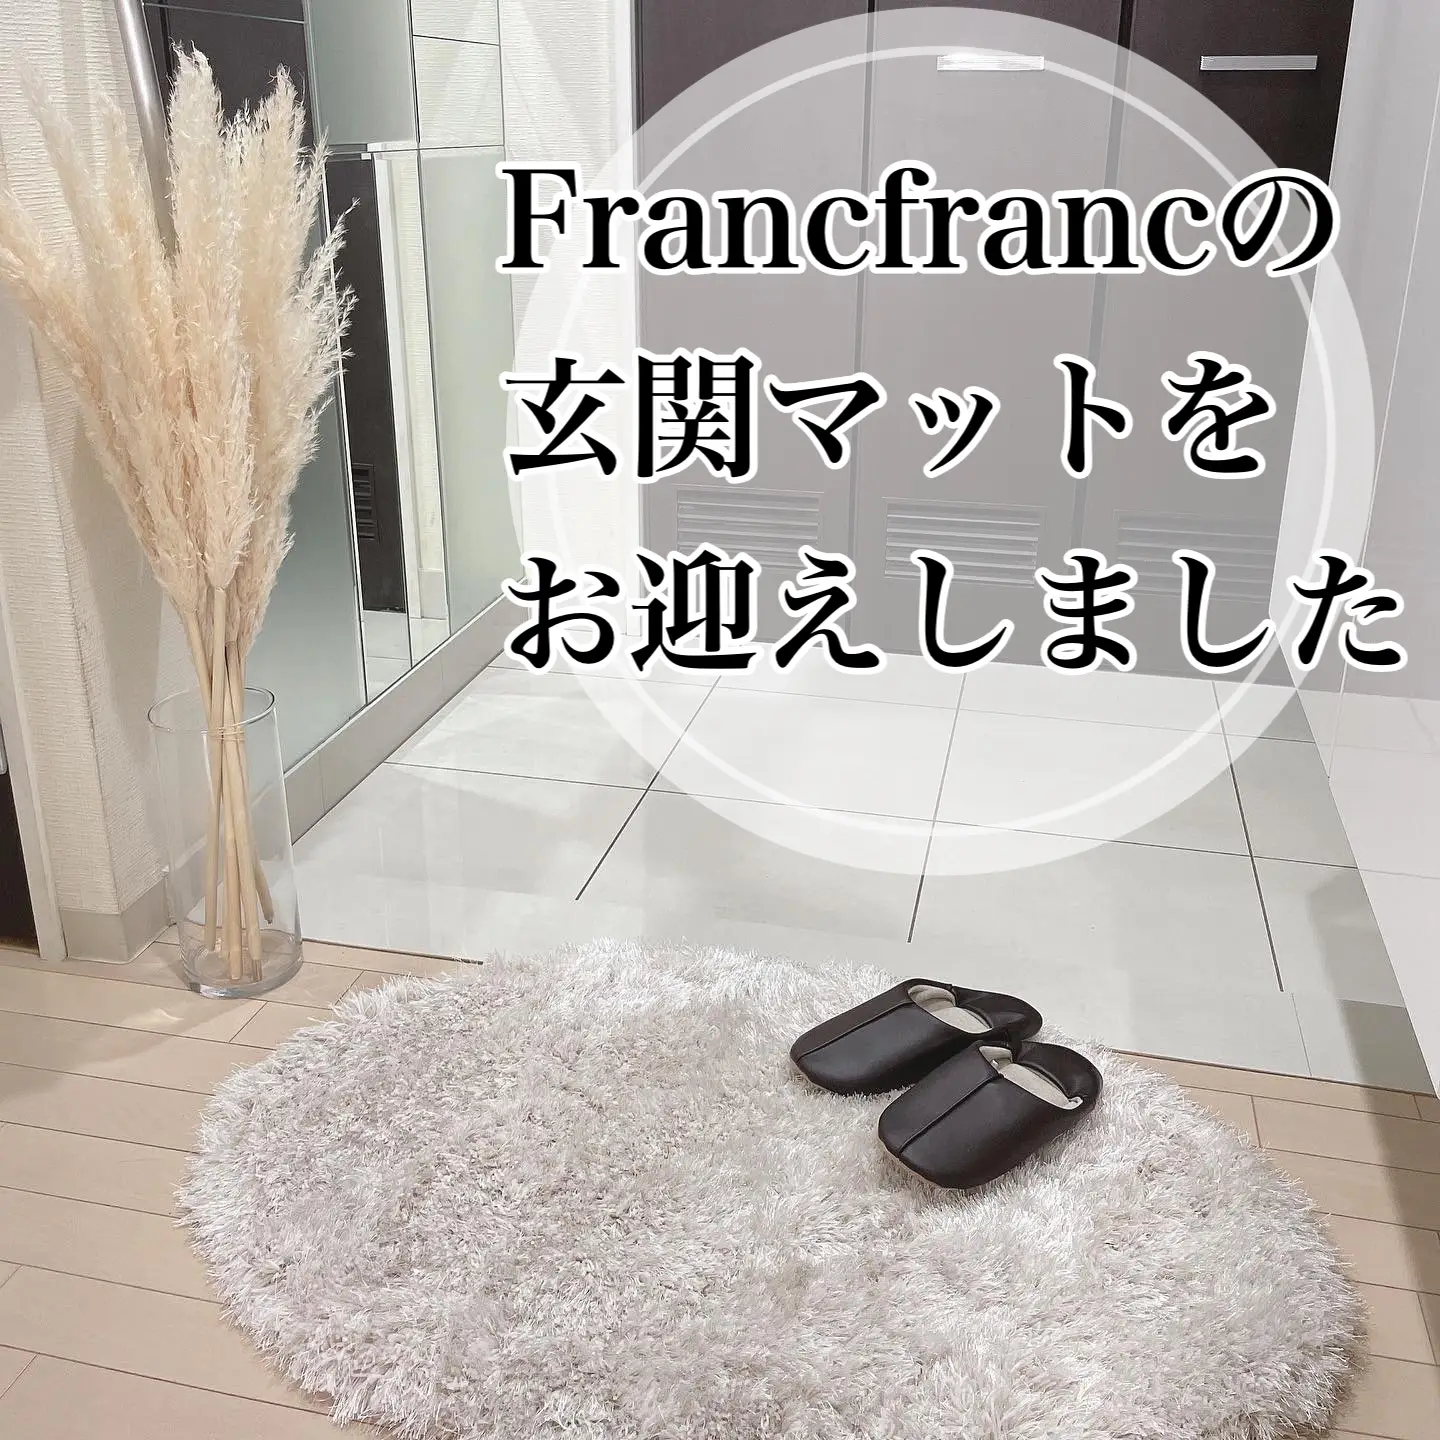 【純正正規】❤新品 フランフラン パターン ラグMサイズ❤ ラグ